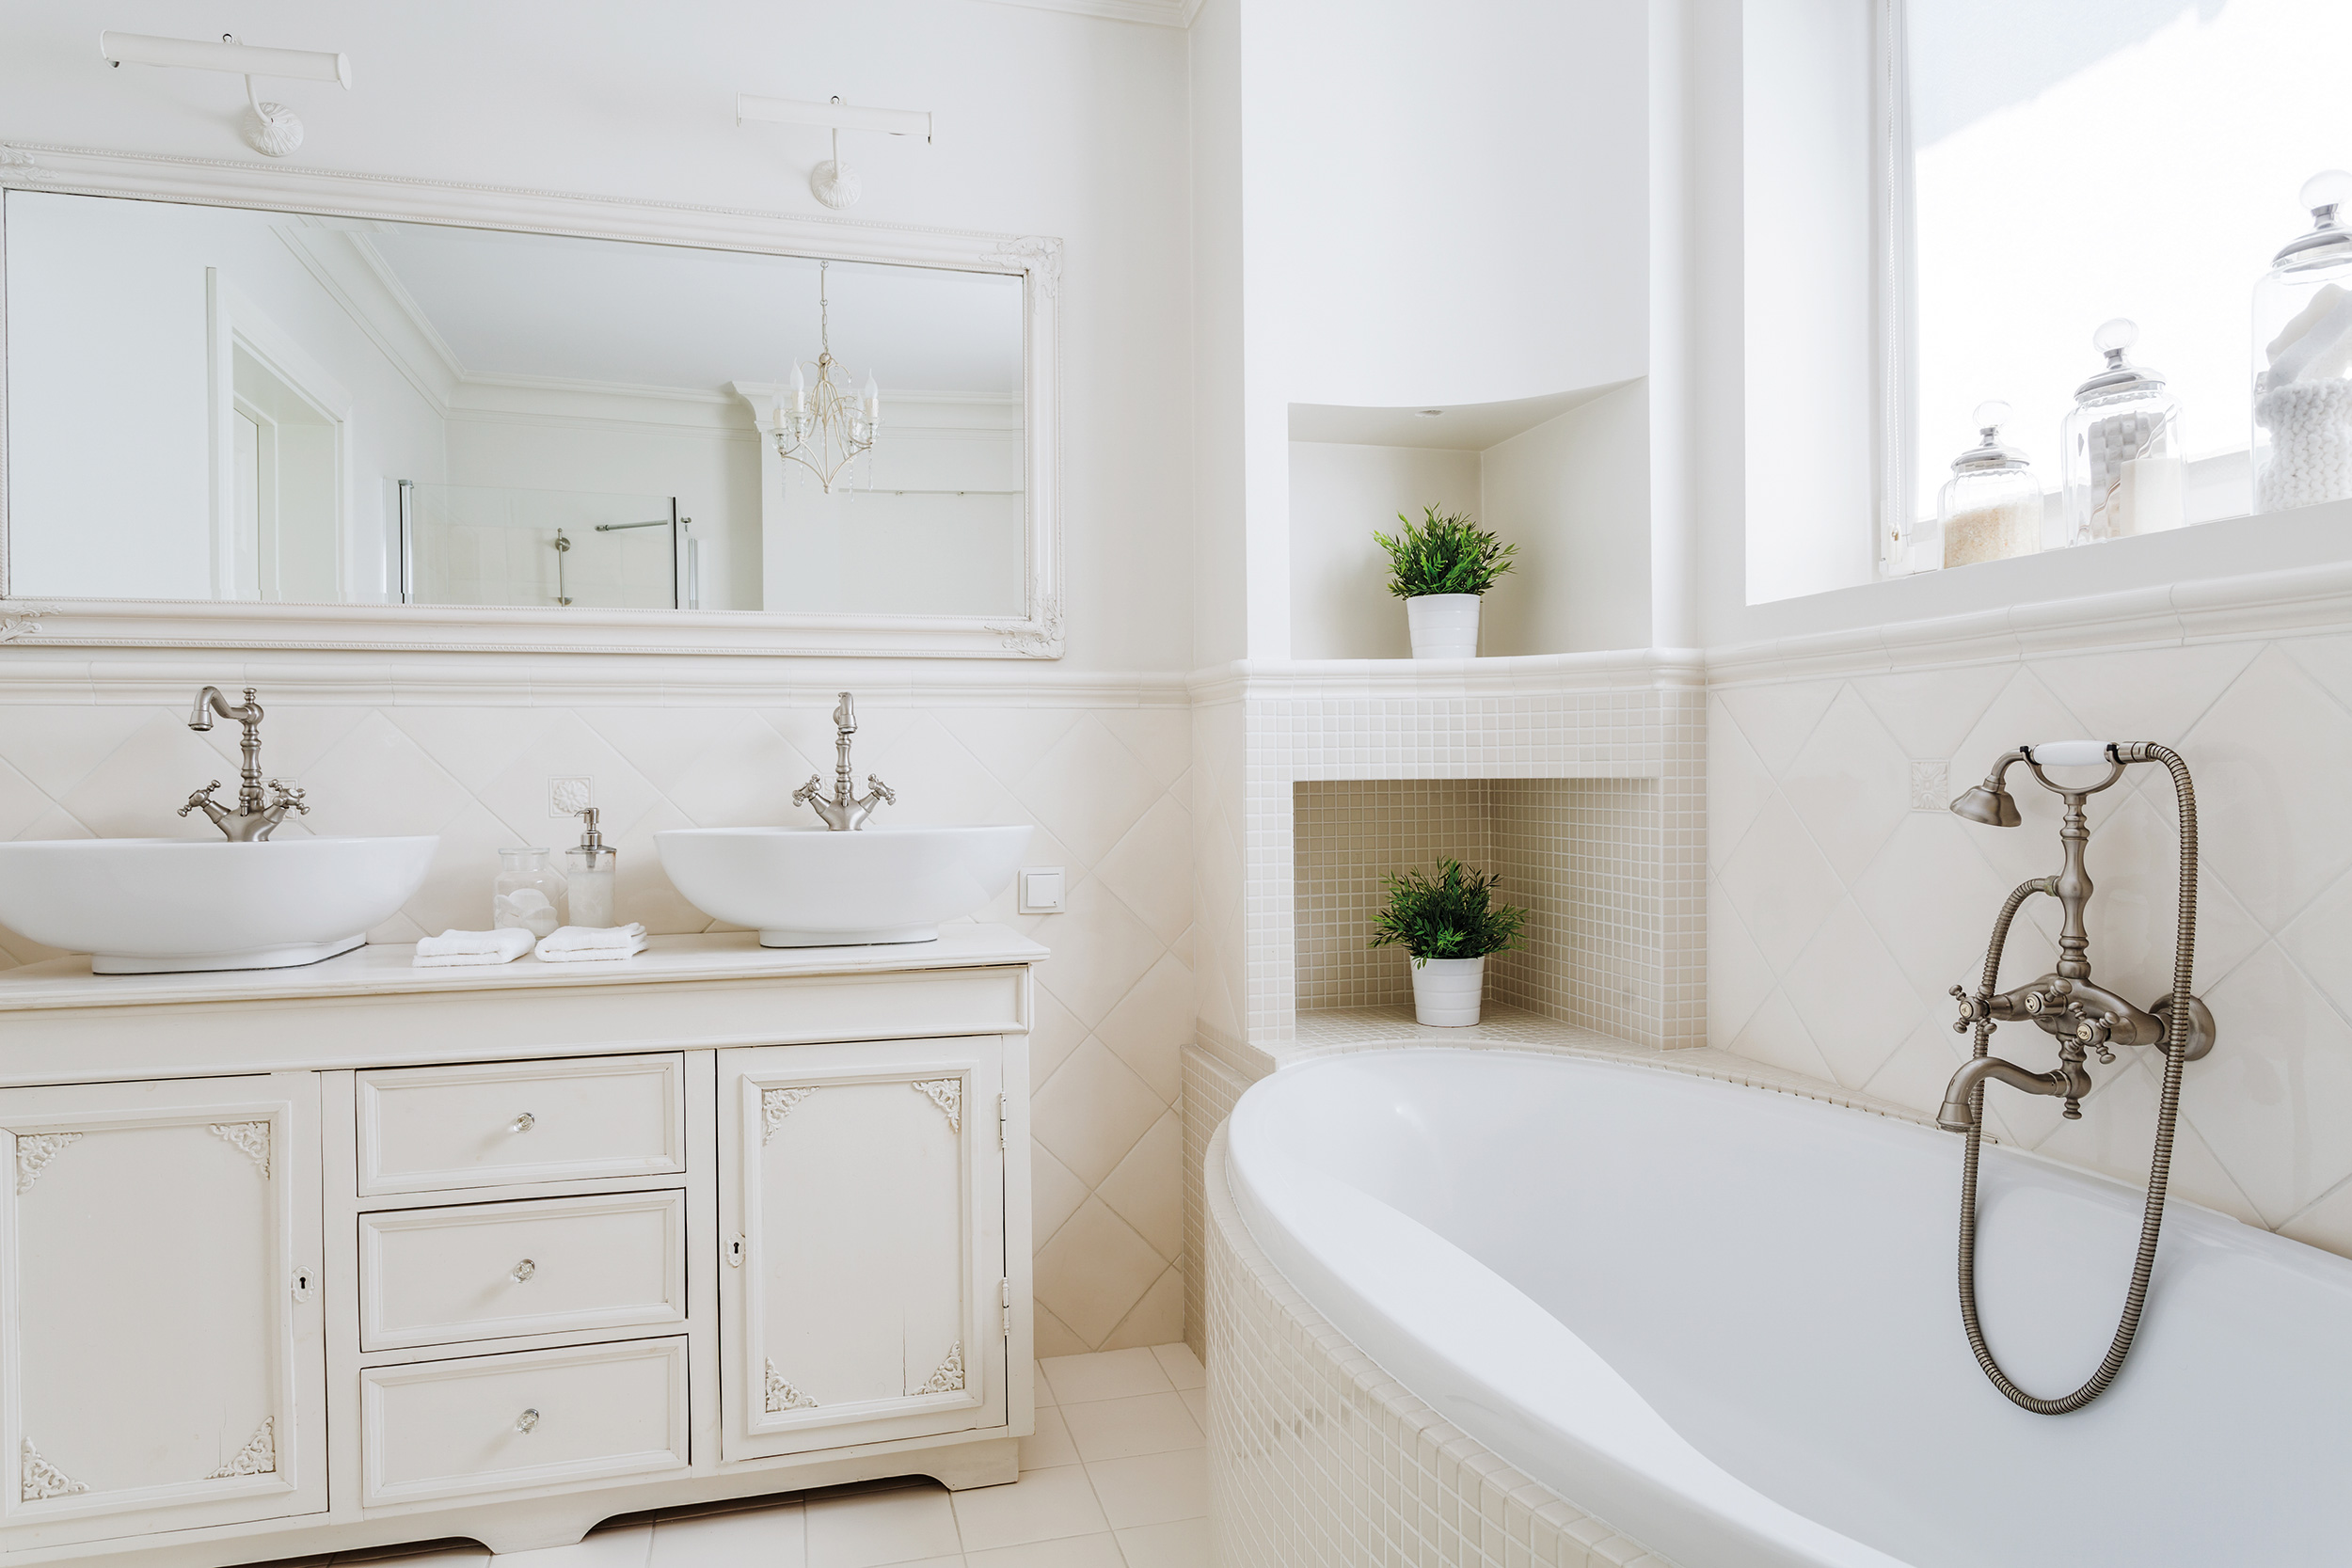 Badezimmer im Landhausstil: weiß, helles Holz